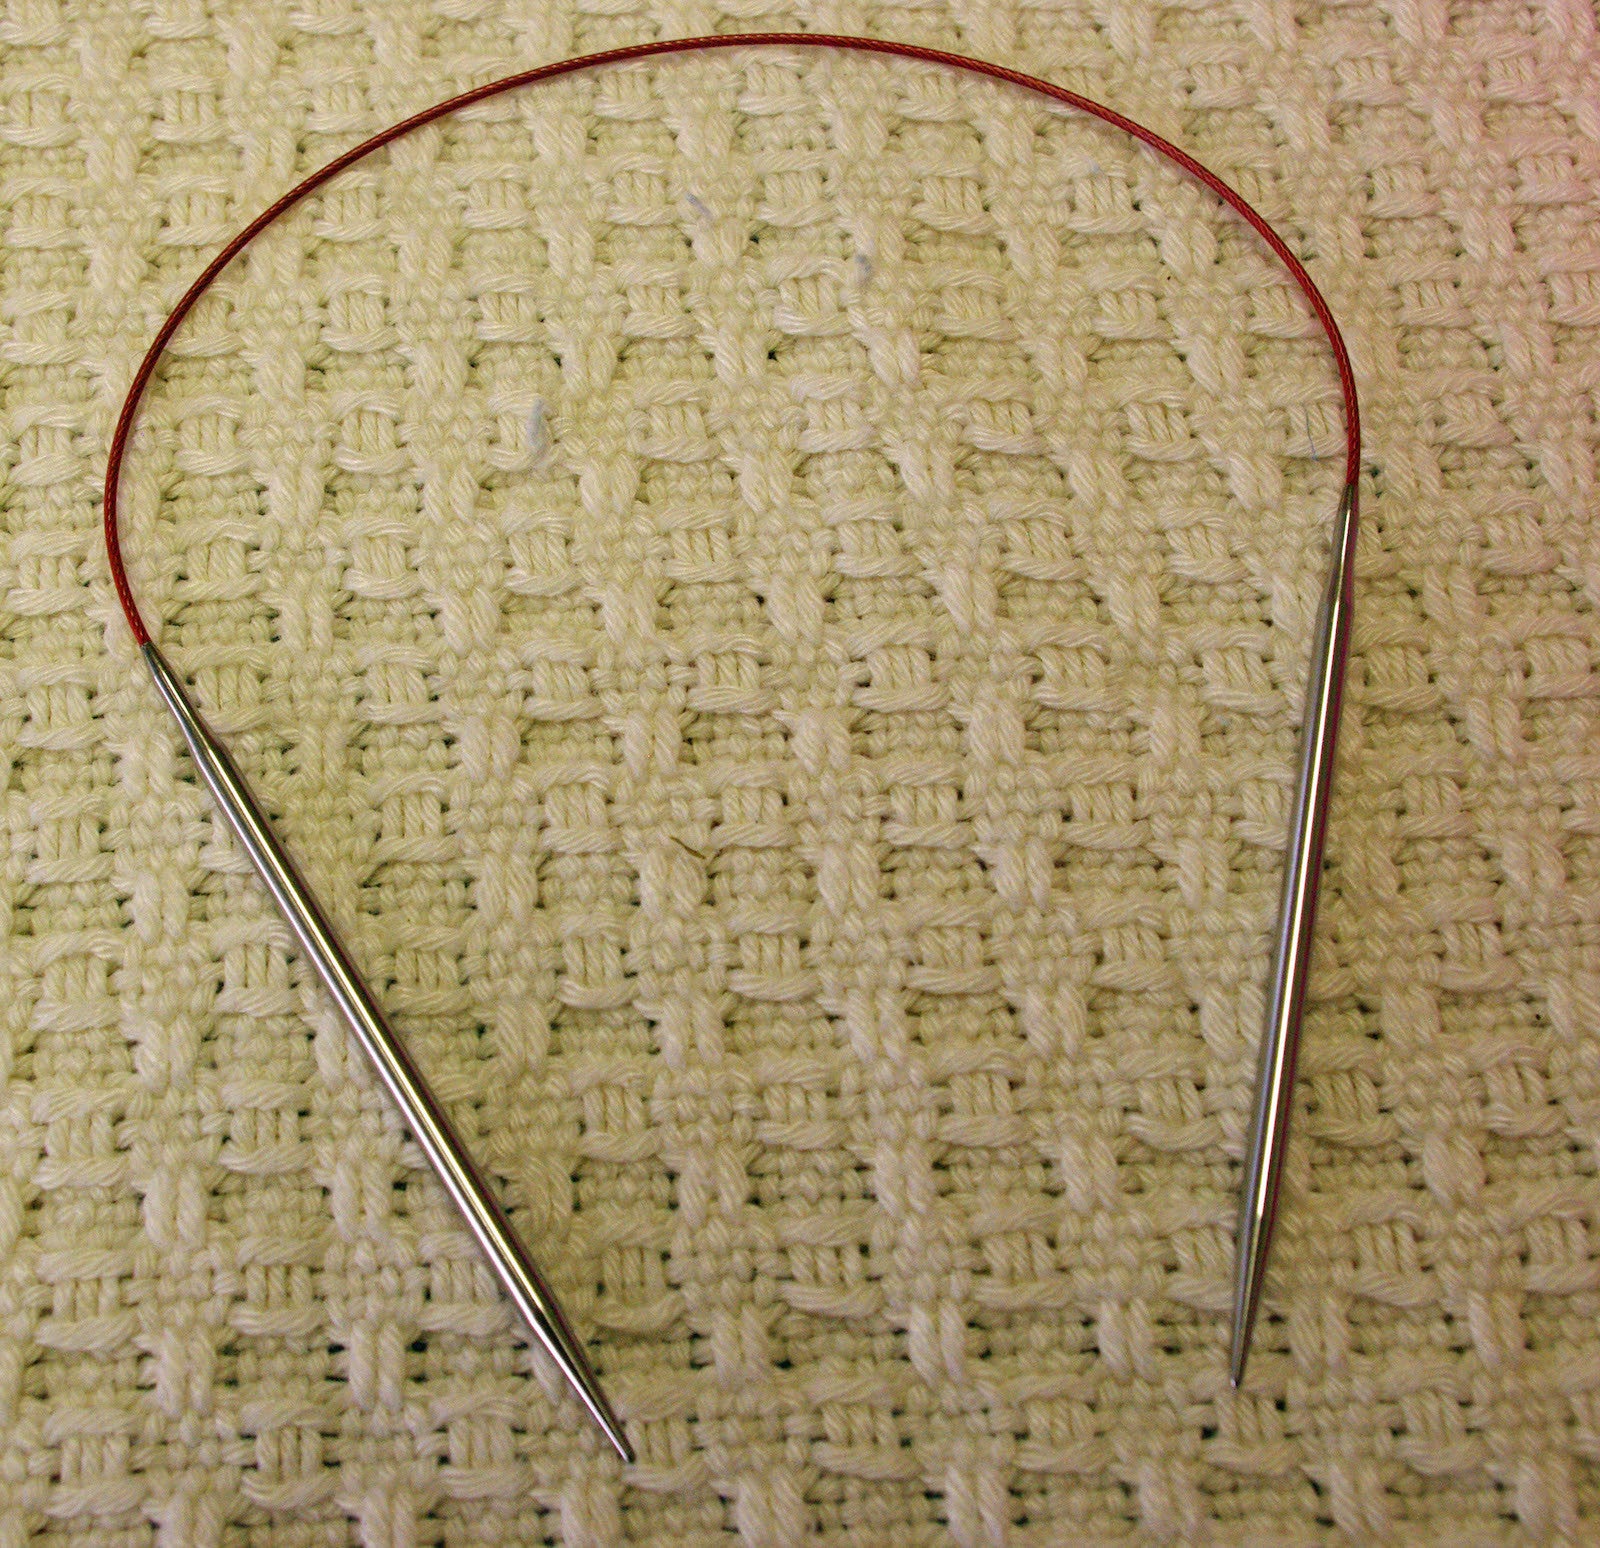 32 Circular Knitting Needles - ChiaoGoo Lace - Hazel Knits Store